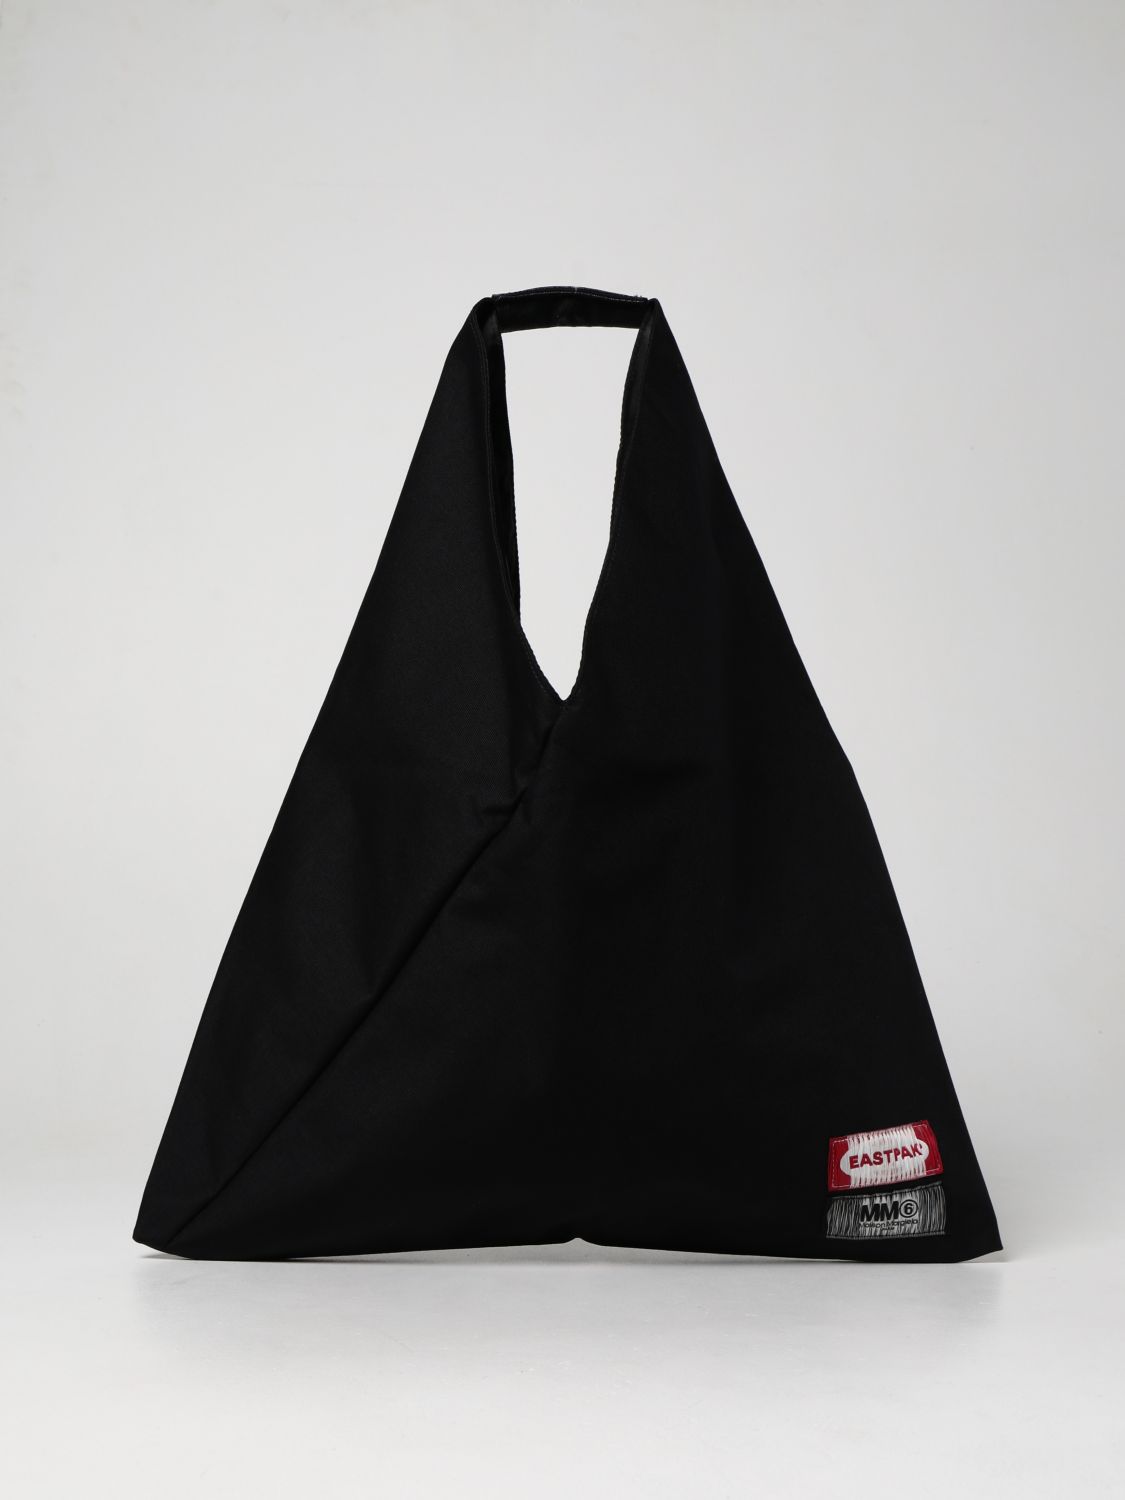 Bags Eastpak: Japanese Mm6 Maison Margiela x Eastpak nylon bag black 1